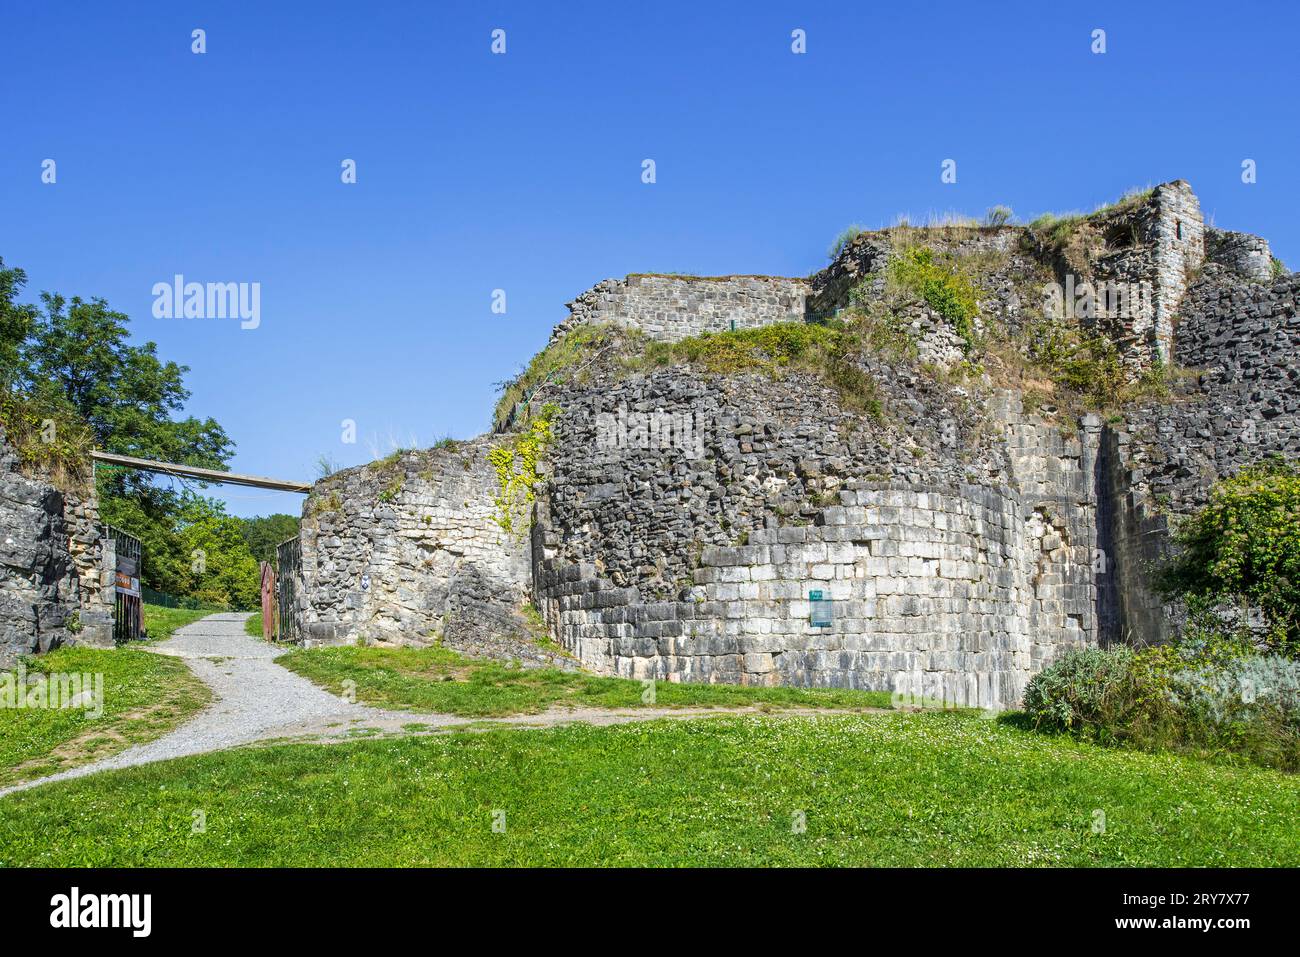 Château de Moha feudale dell'XI secolo, rovine medievali del castello nel villaggio di Moha, Wanze, provincia di Liegi, Vallonia, Belgio Foto Stock